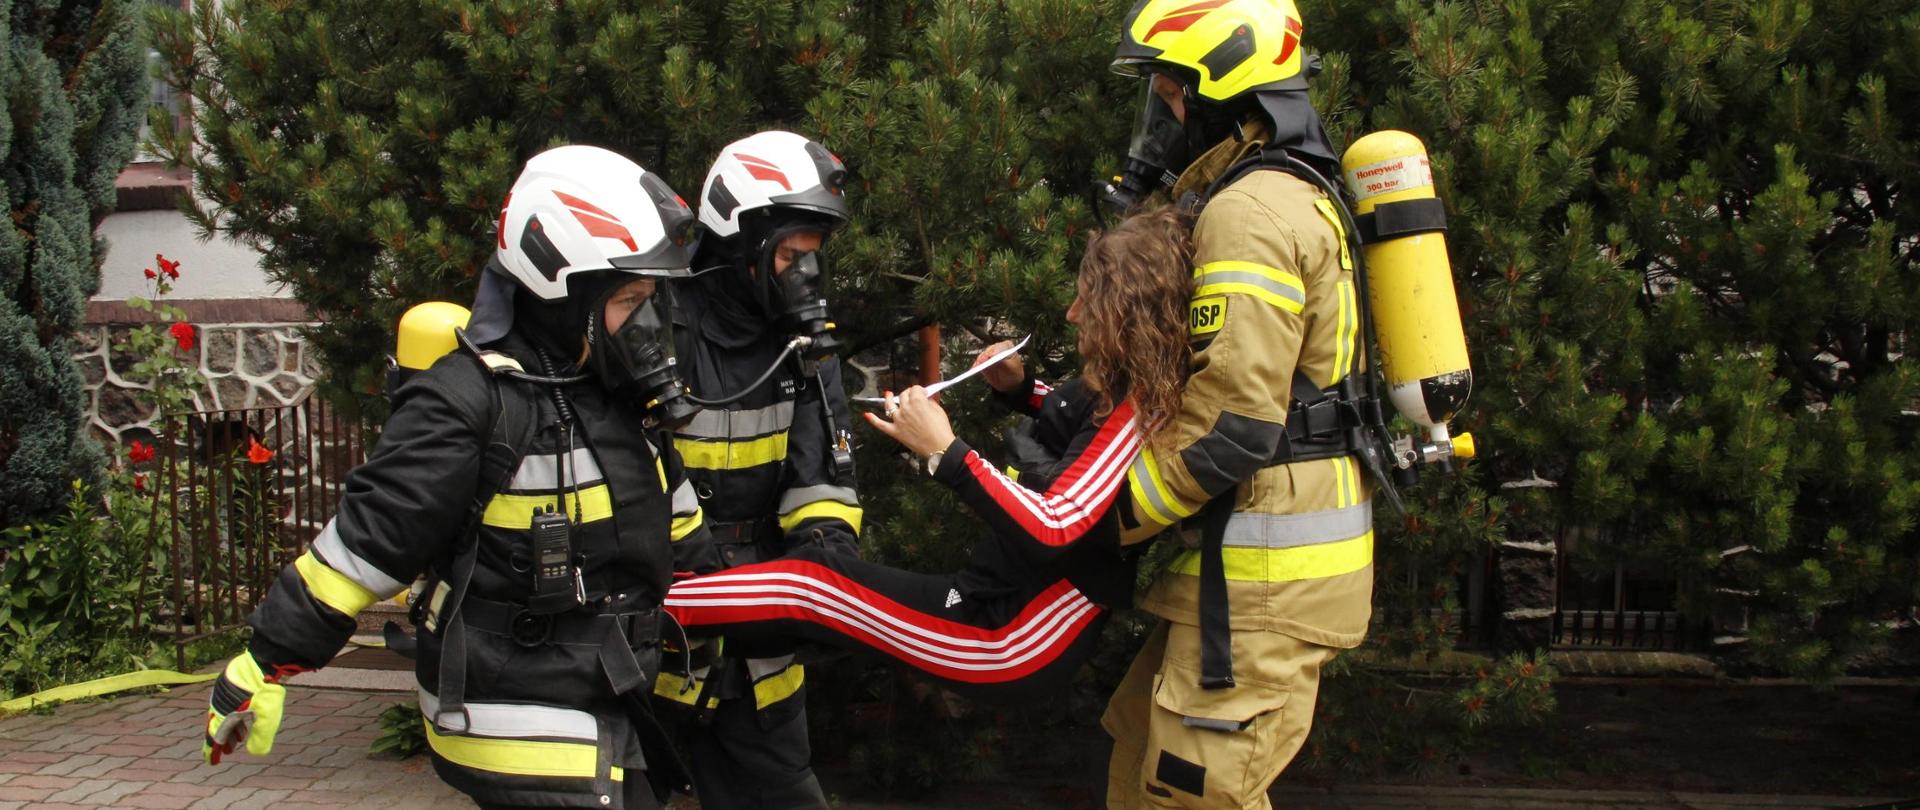 Zdjęcie przedstawia 3 druhów Ochotniczej Straży Pożarnej wynoszących poza budynkiem osobę poszkodowaną